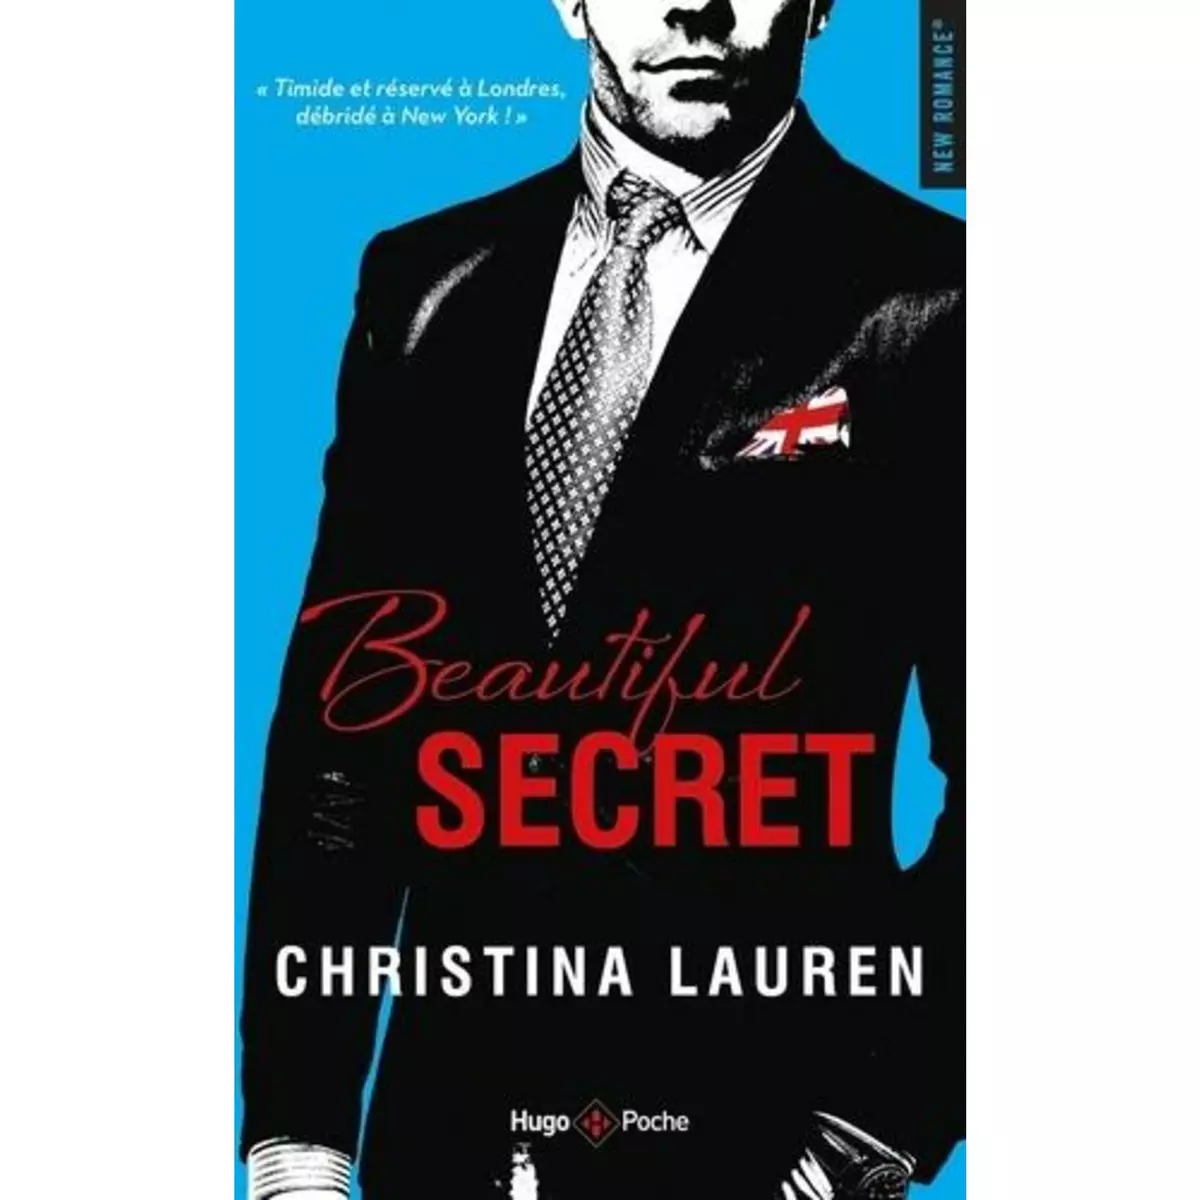  BEAUTIFUL SECRET, Lauren Christina